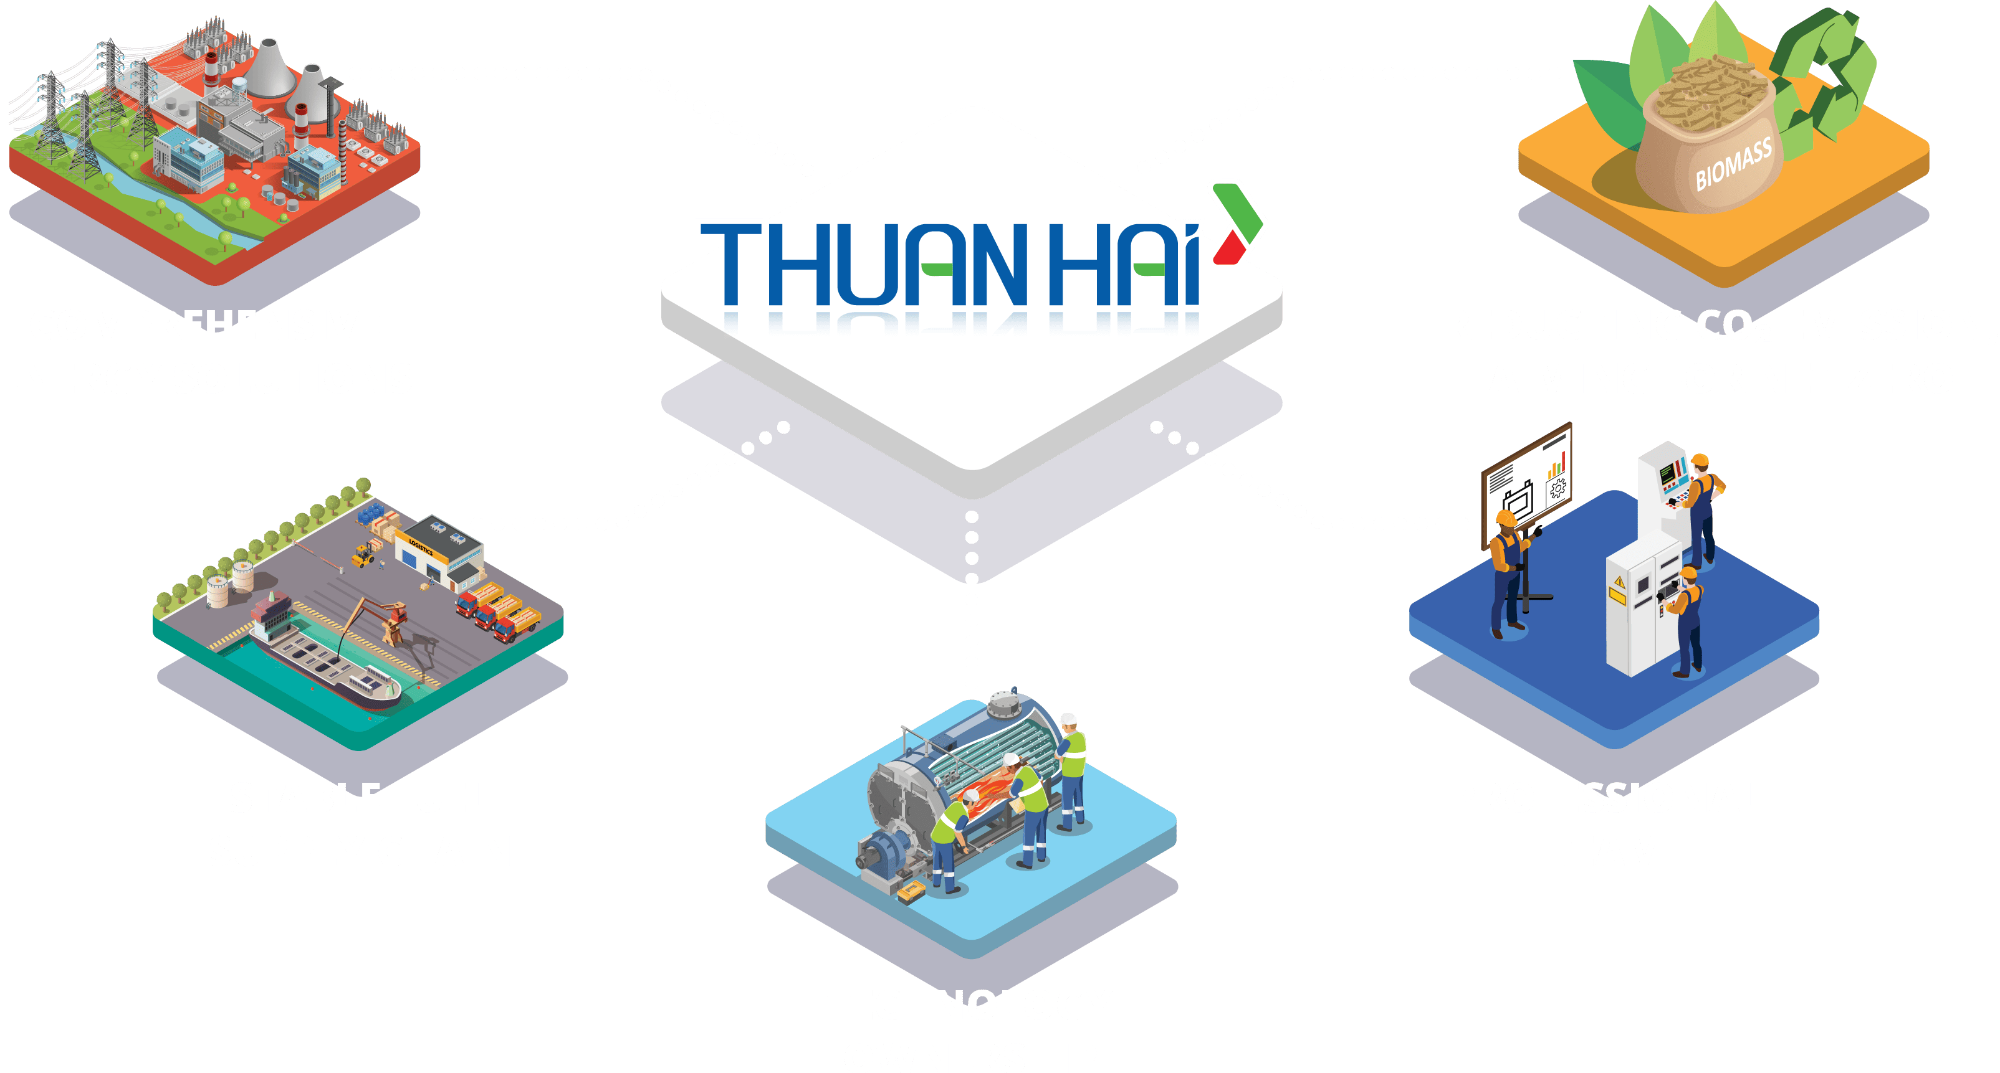 Thuan Hai's 5 Strengths